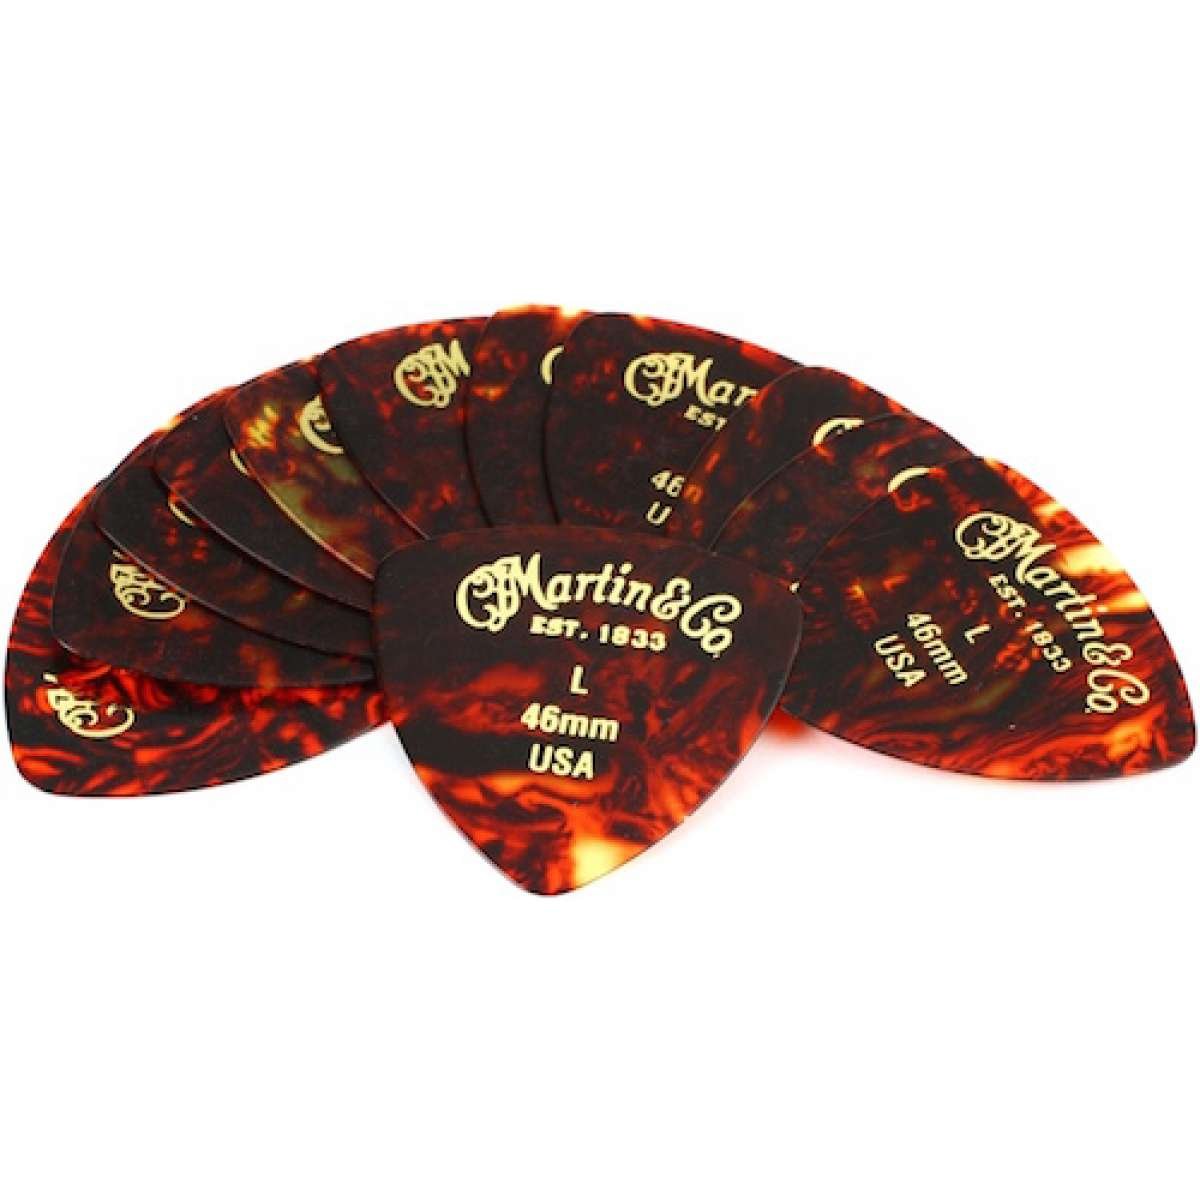 Martin Guitars Faux-Tortoise 346 #2 Guitar Picks 12 Pack - 0.46mm Light